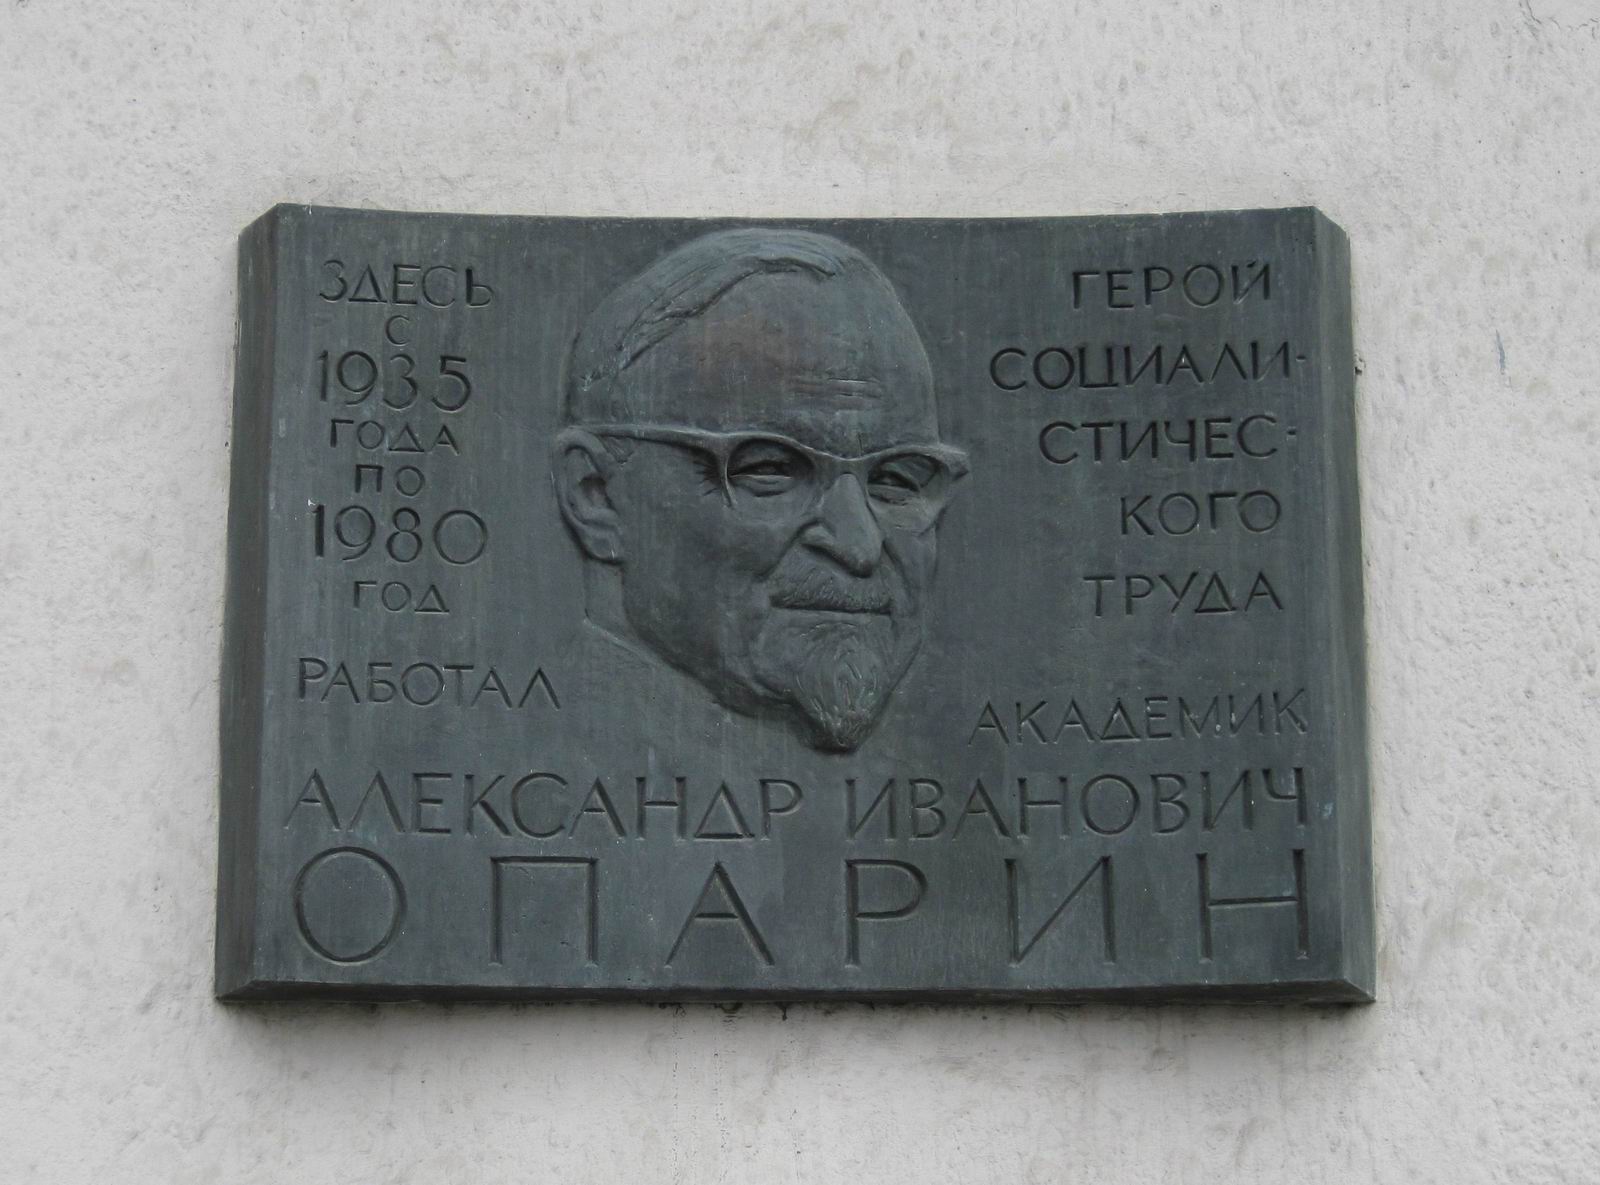 Мемориальная доска Опарину А.И. (1894–1980), ск. М.О.Лушников, арх. В.С.Кубасов, на Ленинском проспекте, дом 33, открыта 28.5.1982.